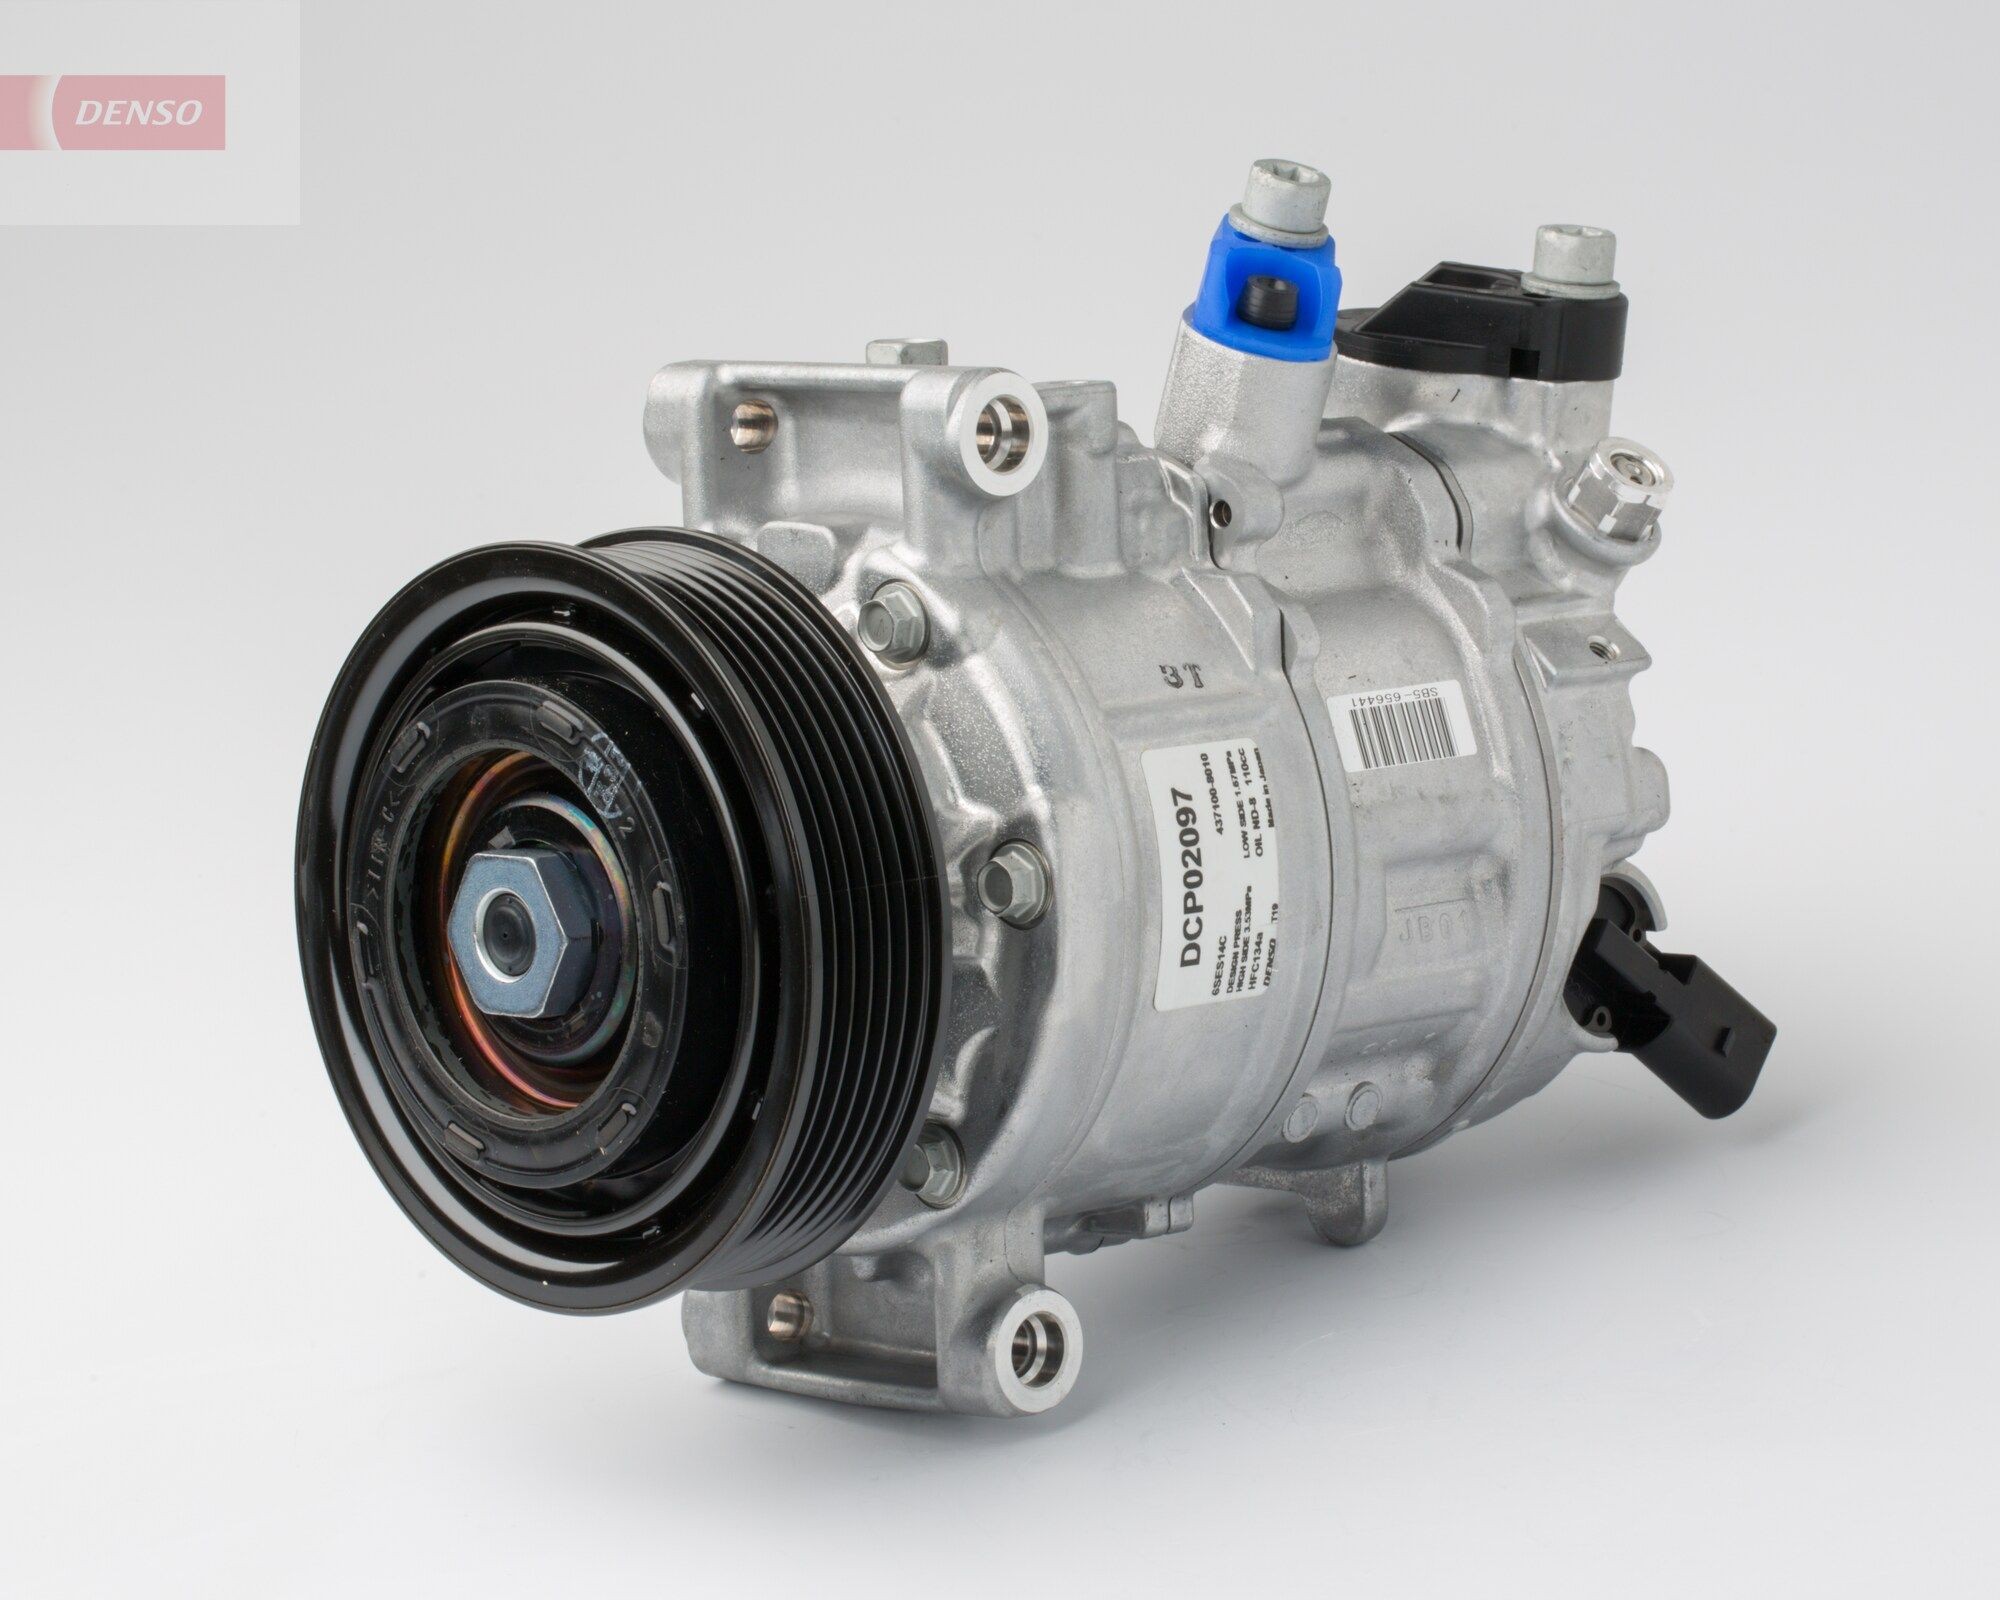 DENSO DCP02097 Kompressor Klimaanlage 6SEU14C, PAG 46, R 134a Porsche in Original Qualität